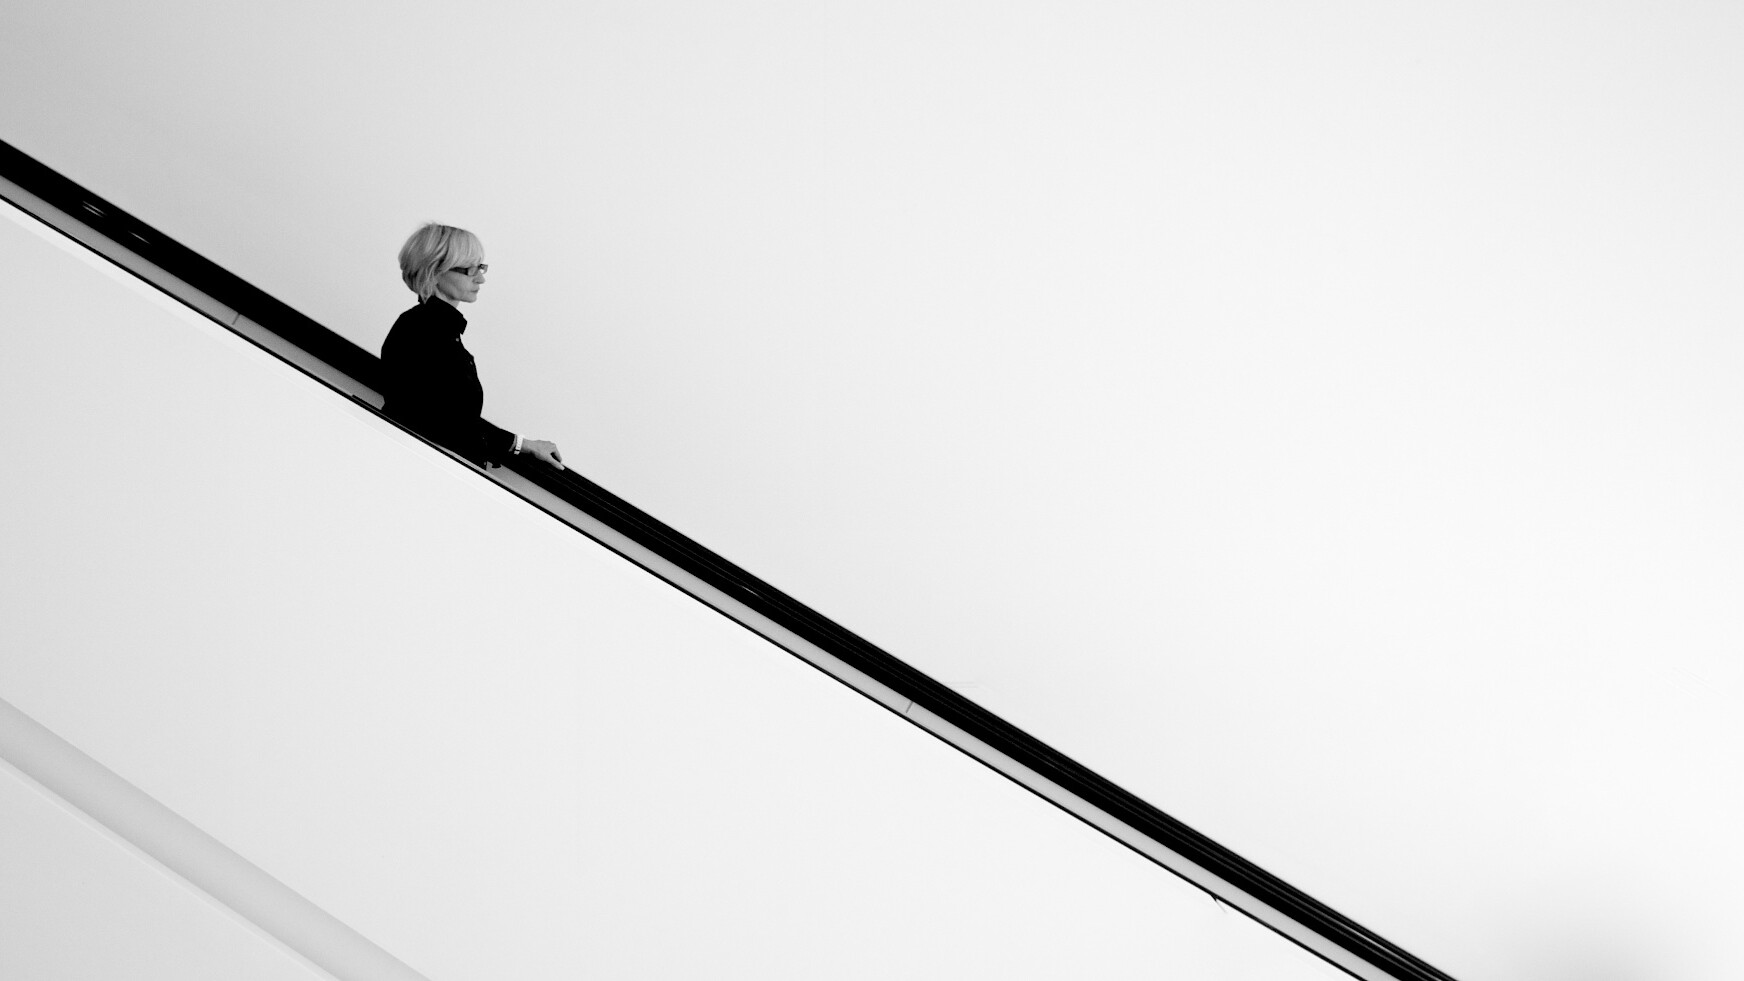 spazio vuoto nella fotografia, donna con occhiali su scale nerel